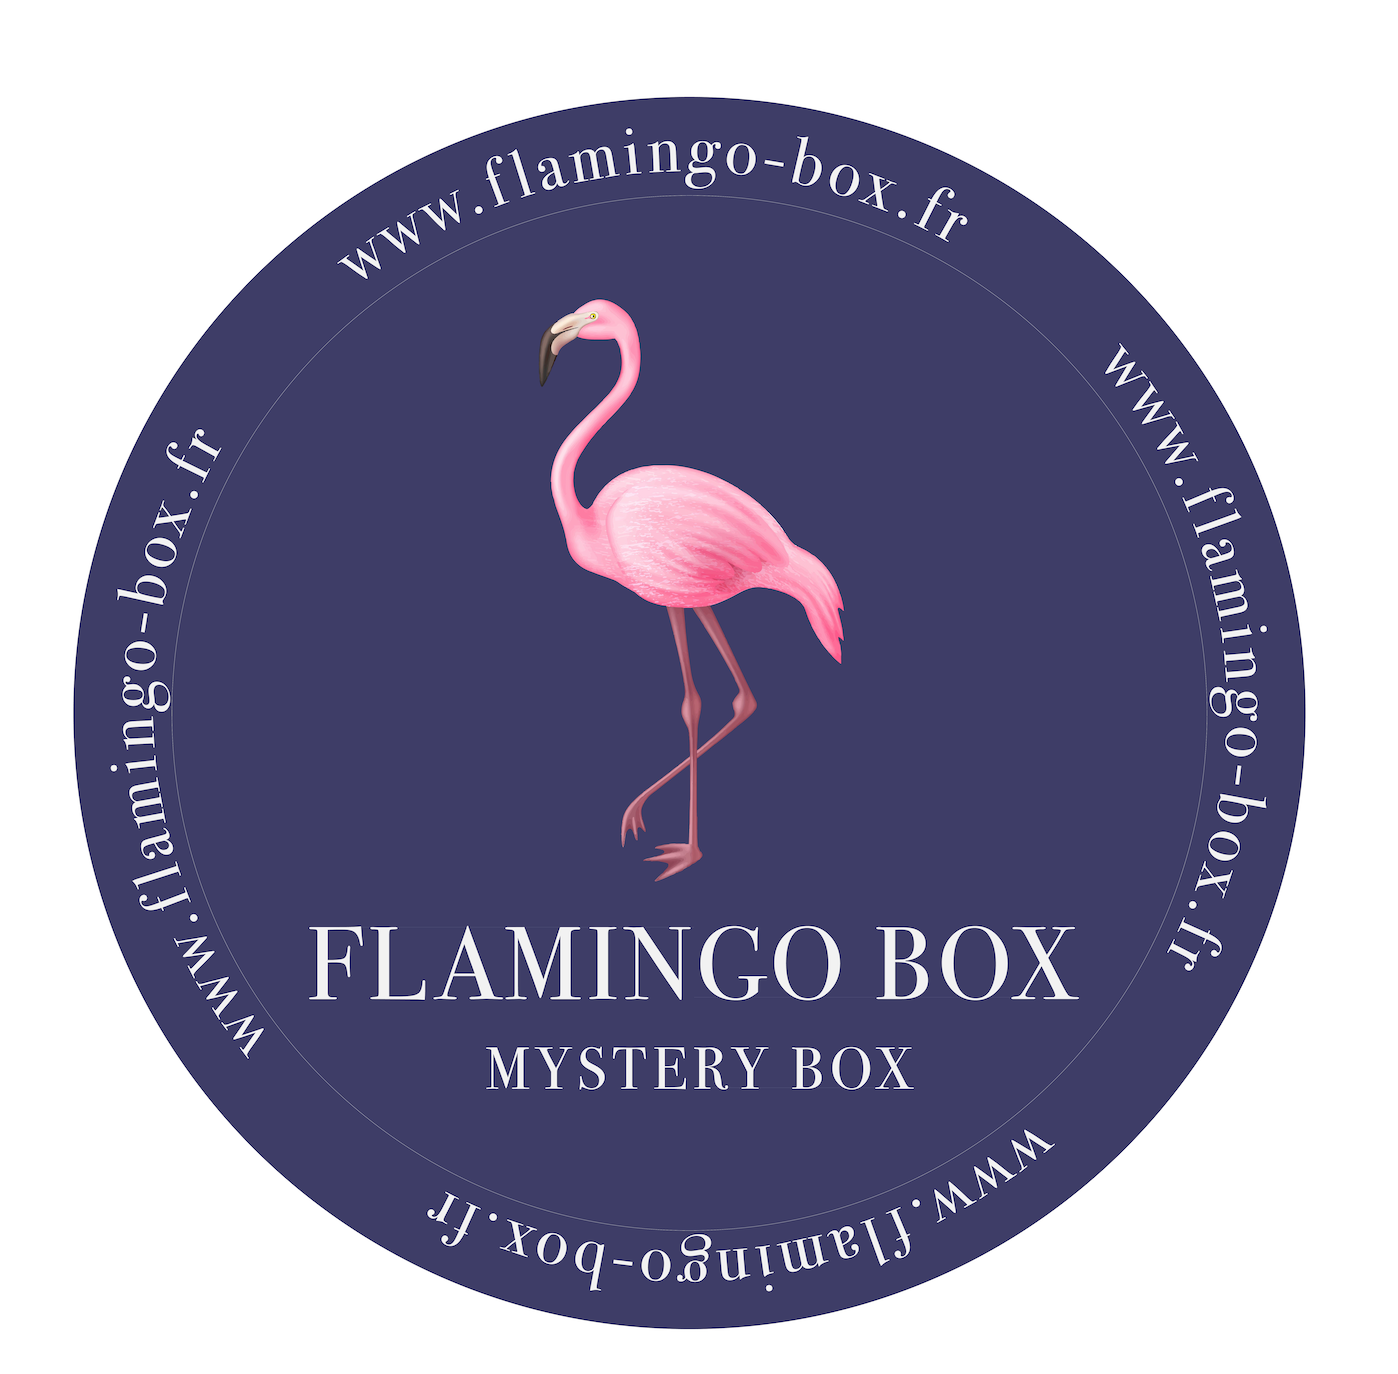 Flamingo Box fait un carton en vendant des colis perdus sans